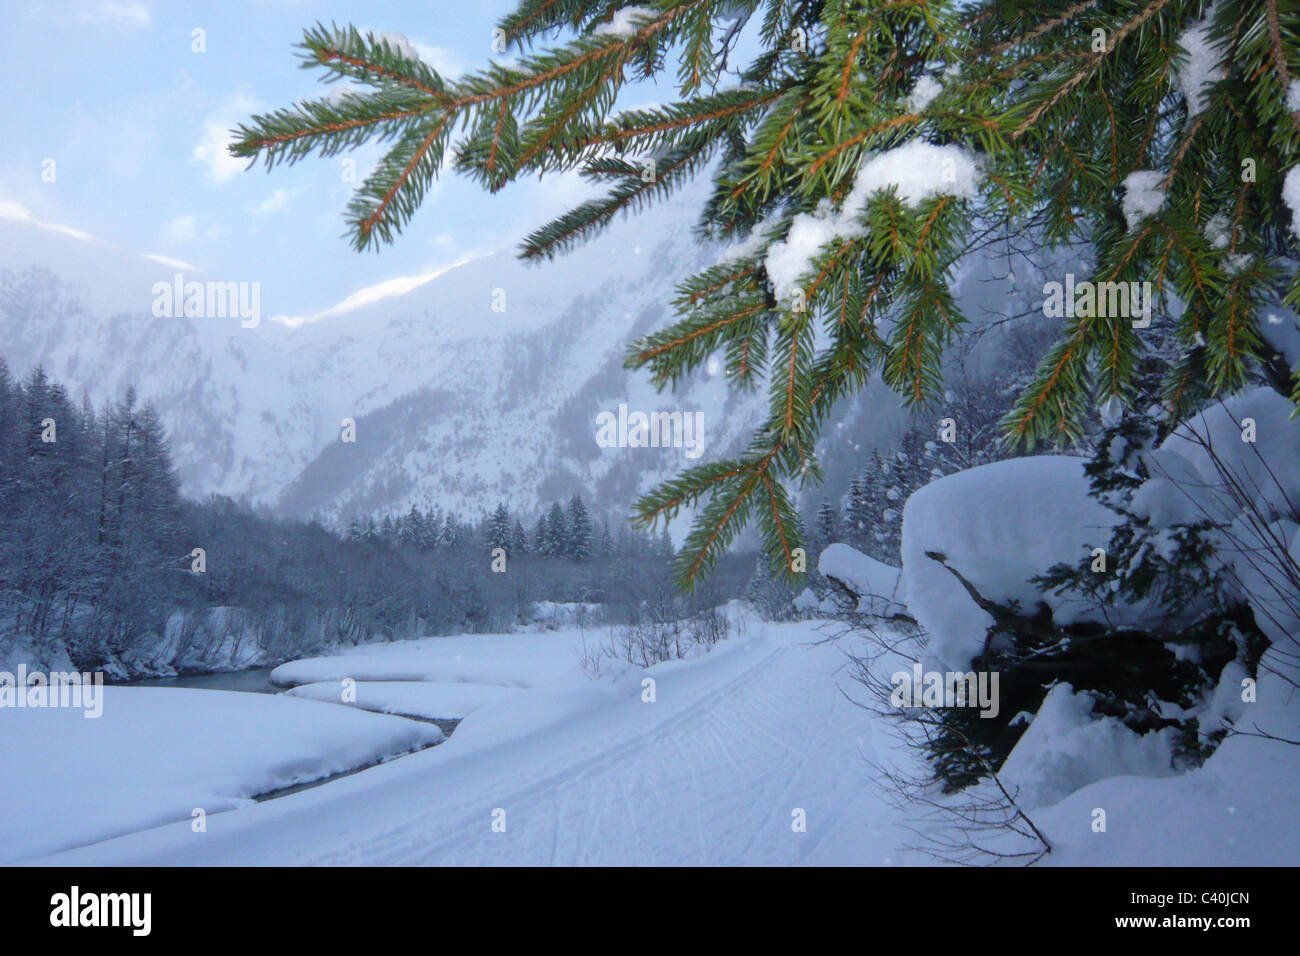 La Svizzera, Vallese, Goms, superiore legno, cross-country trail e il Rodano, inverno, rami d abete, inverni, neve Foto Stock